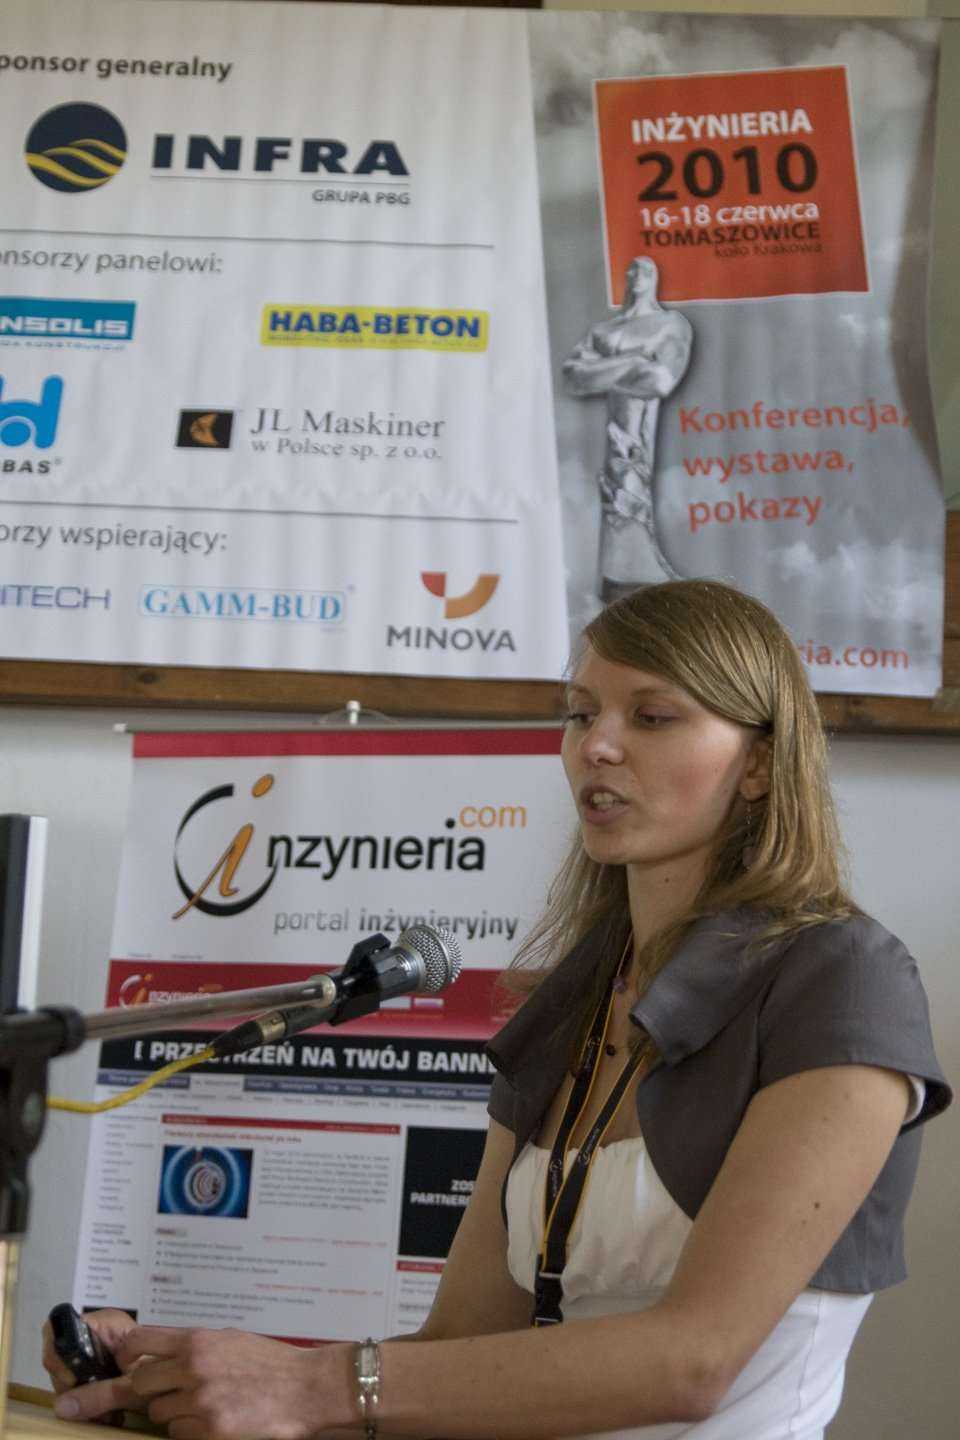 mgr inż. Beata Nienartowicz, z Politechniki Wrocławskiej mówi o badaniach nośności modułów kompozytowych stosowanych w rekonstrukcjach przewodów kanalizacyjnych